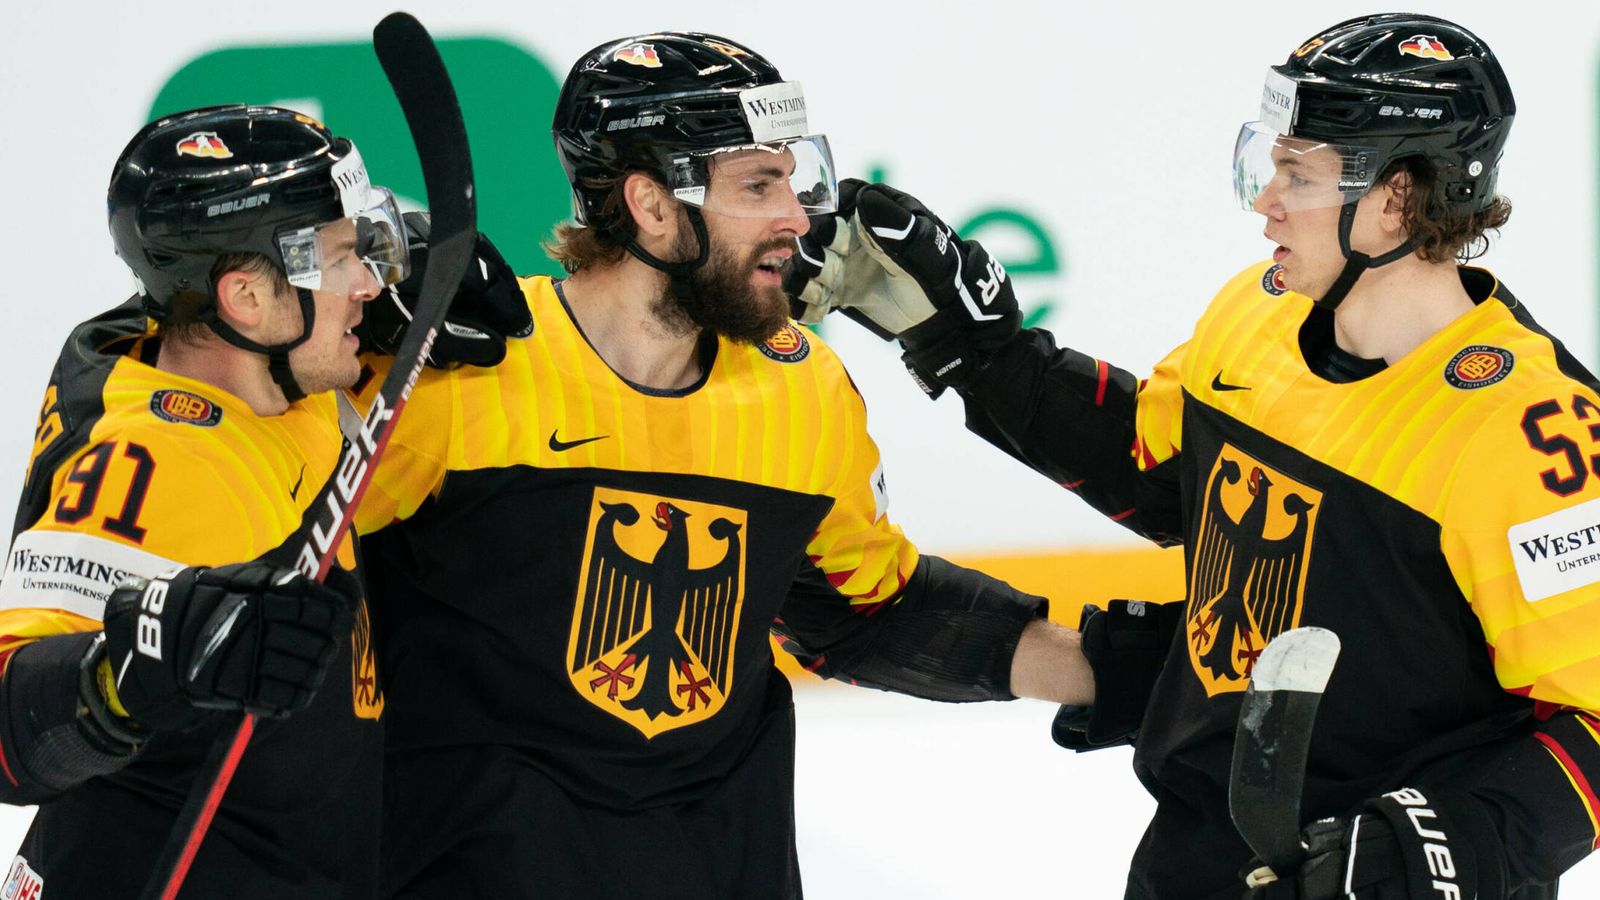 Eishockey-WM News Deutschland kann gegen Kasachstan Viertelfinale perfekt machen Eishockey News Sky Sport